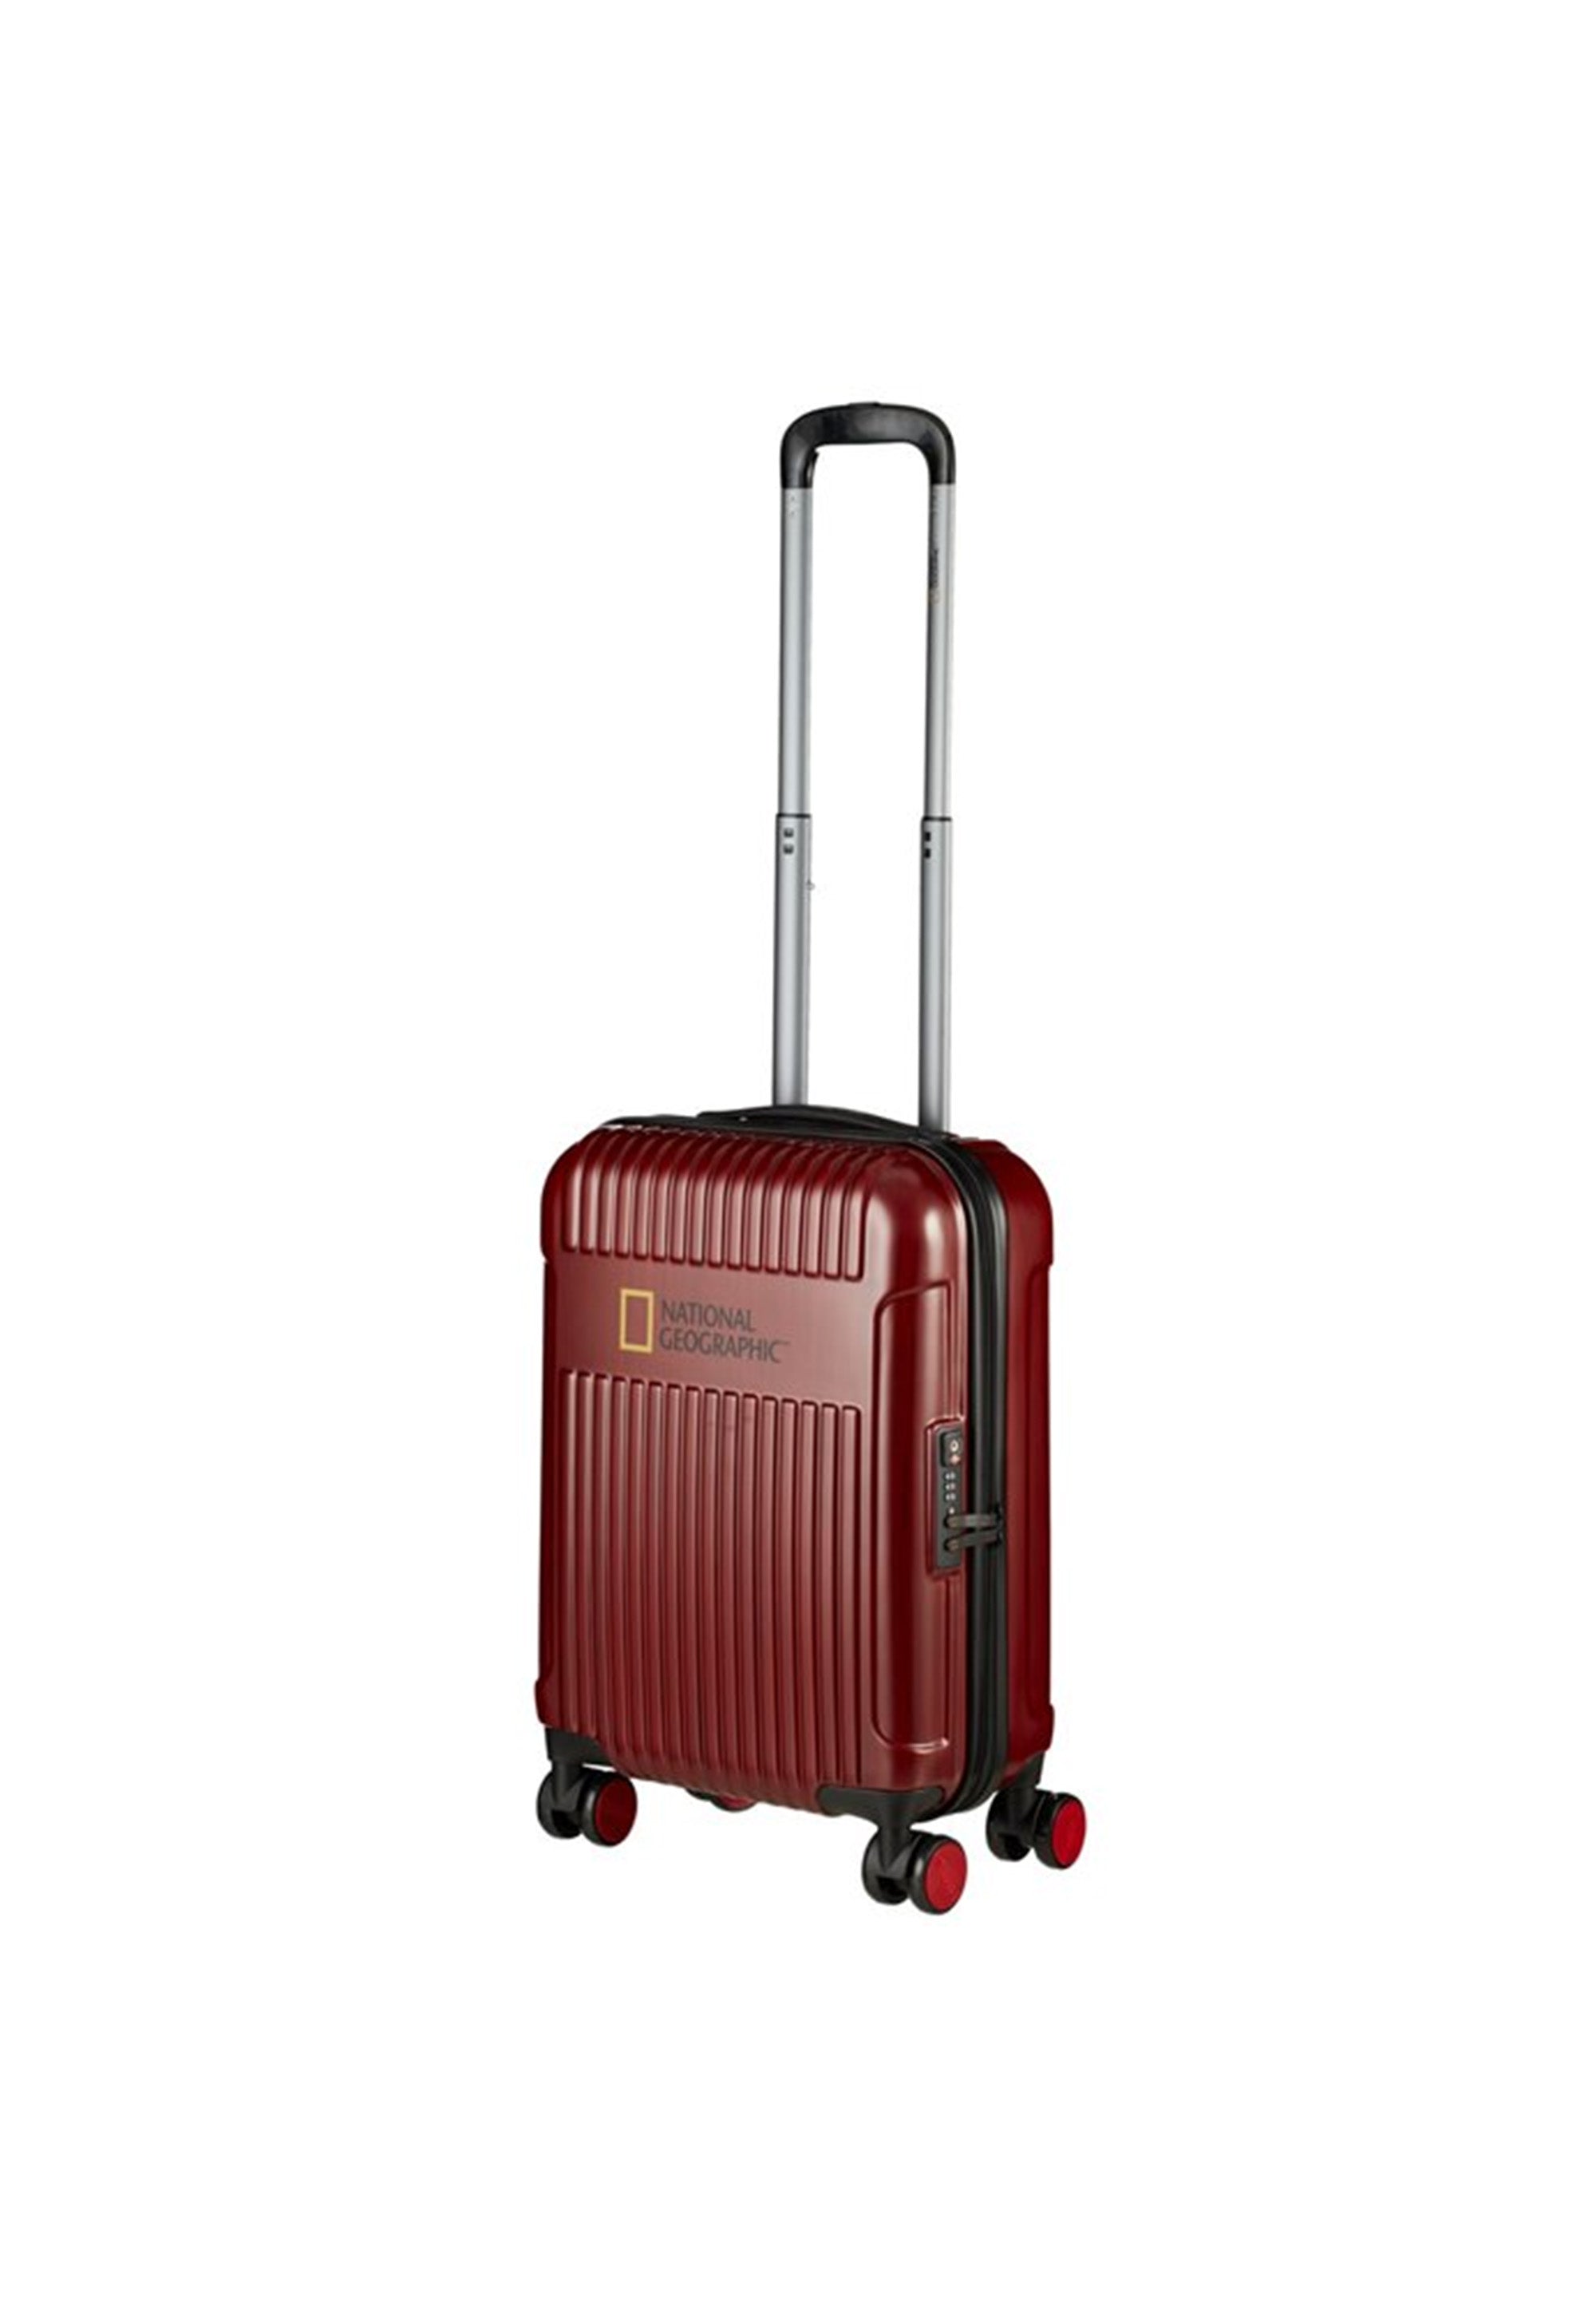 National Geographic - Transit Handgepäck mit Laptopfach Hartschalenkoffer / Trolley / Reisekoffer - 55cm - (Small) Rot